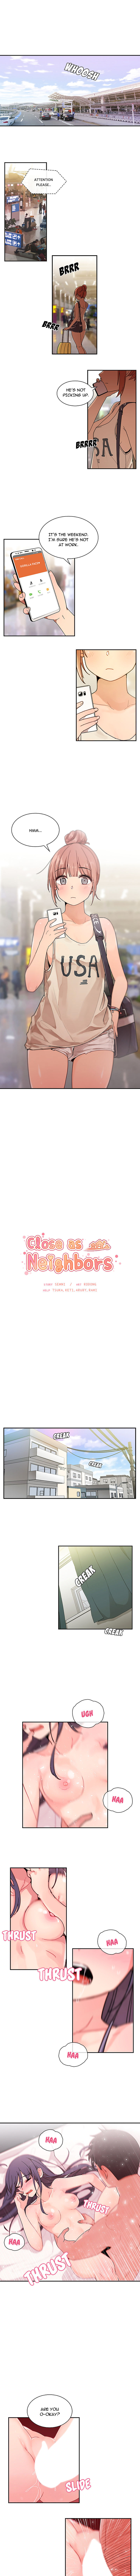 Fechar como vizinhos parte 4